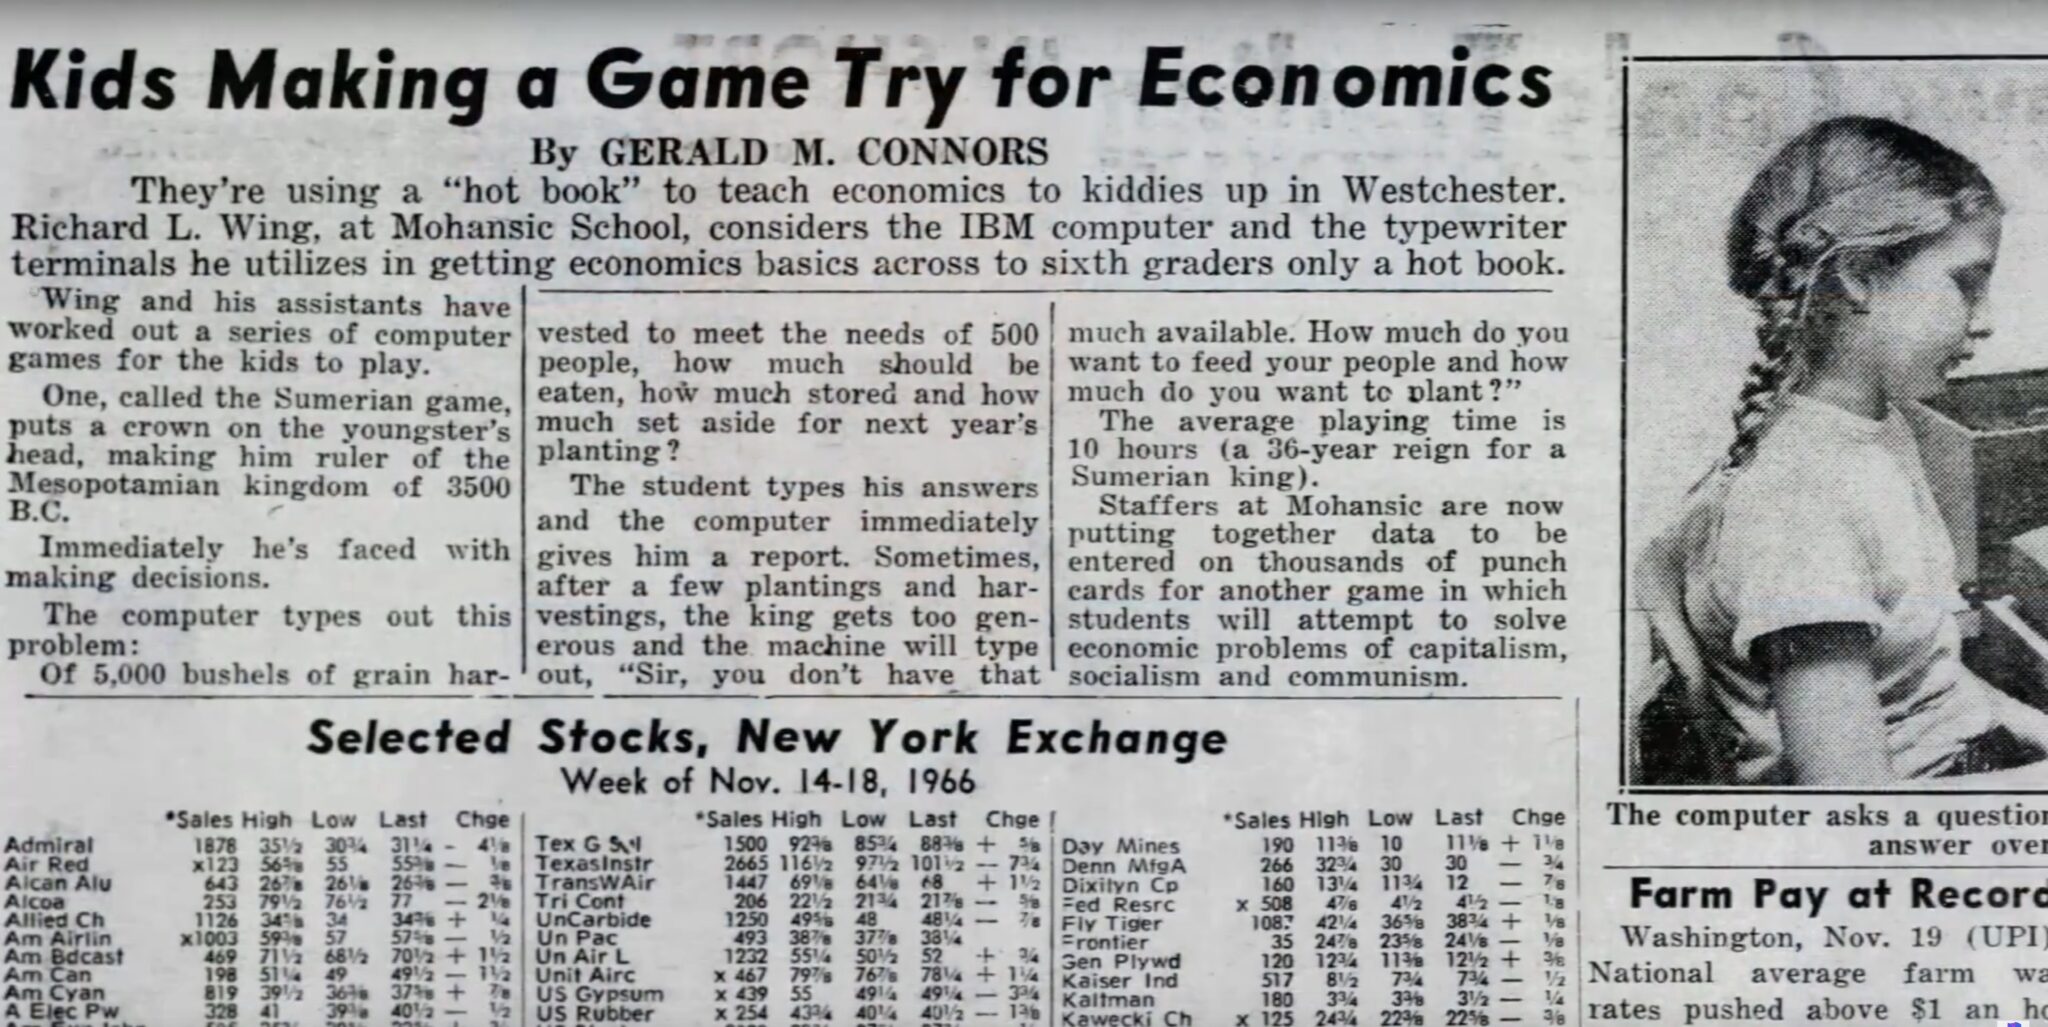 (Het Sumerische Spel belandt ook in het zakenkatern van verschillende kranten, hier in november 1966. Het aandeel Texas Instruments staat net op 101 US dollar.)